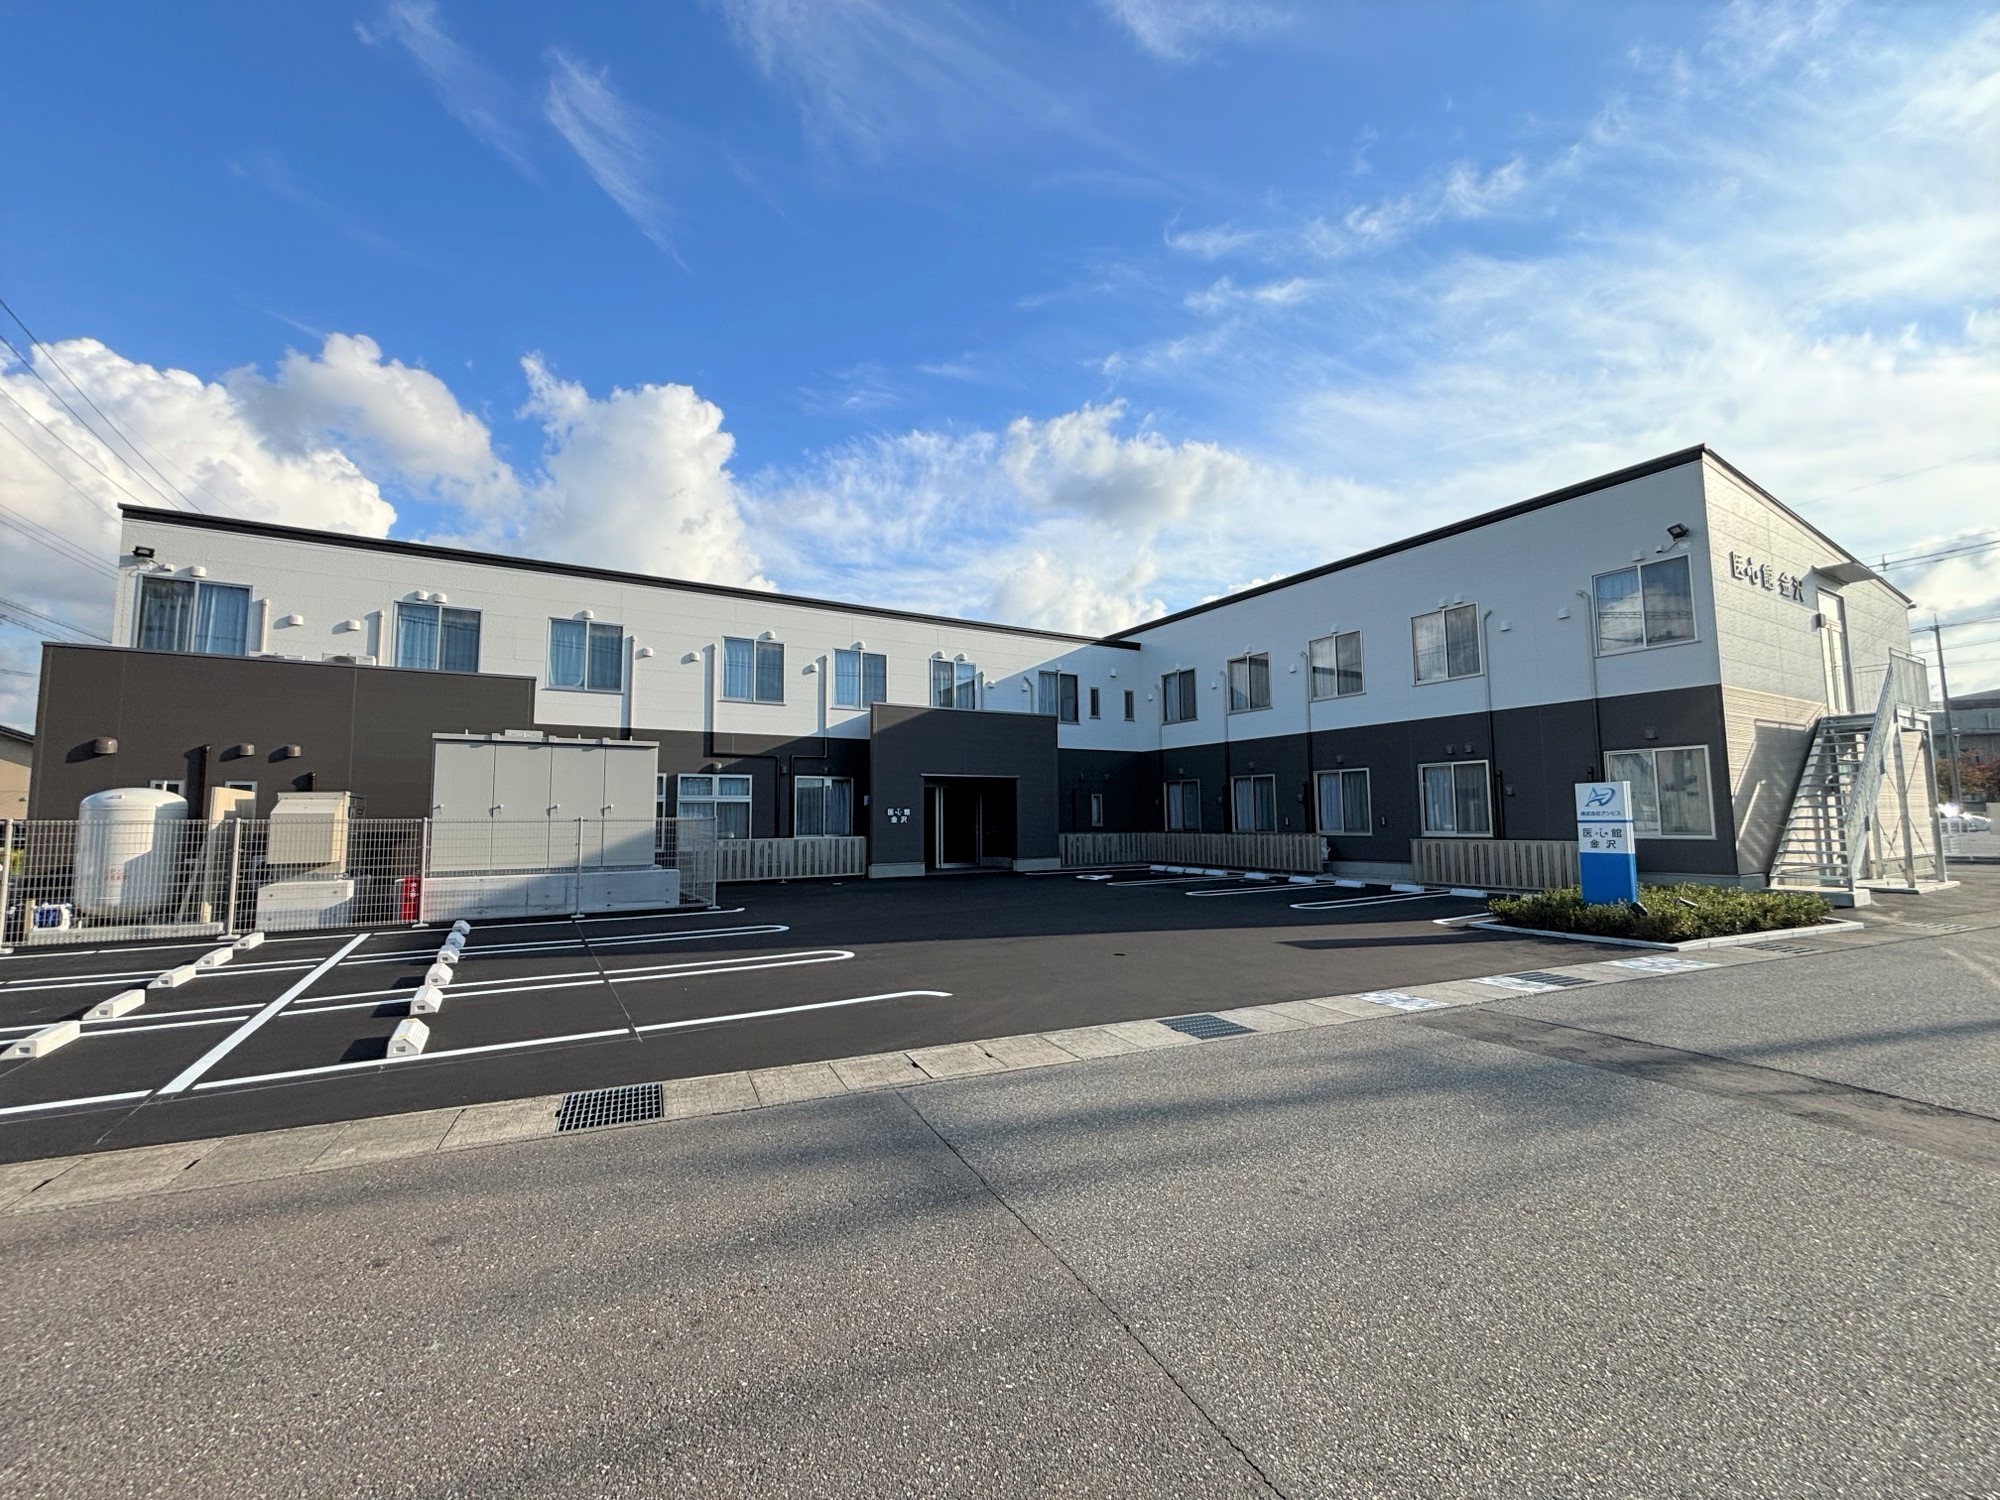 石川県では初開設となる 有料老人ホーム「医心館 金沢」をオープンしました